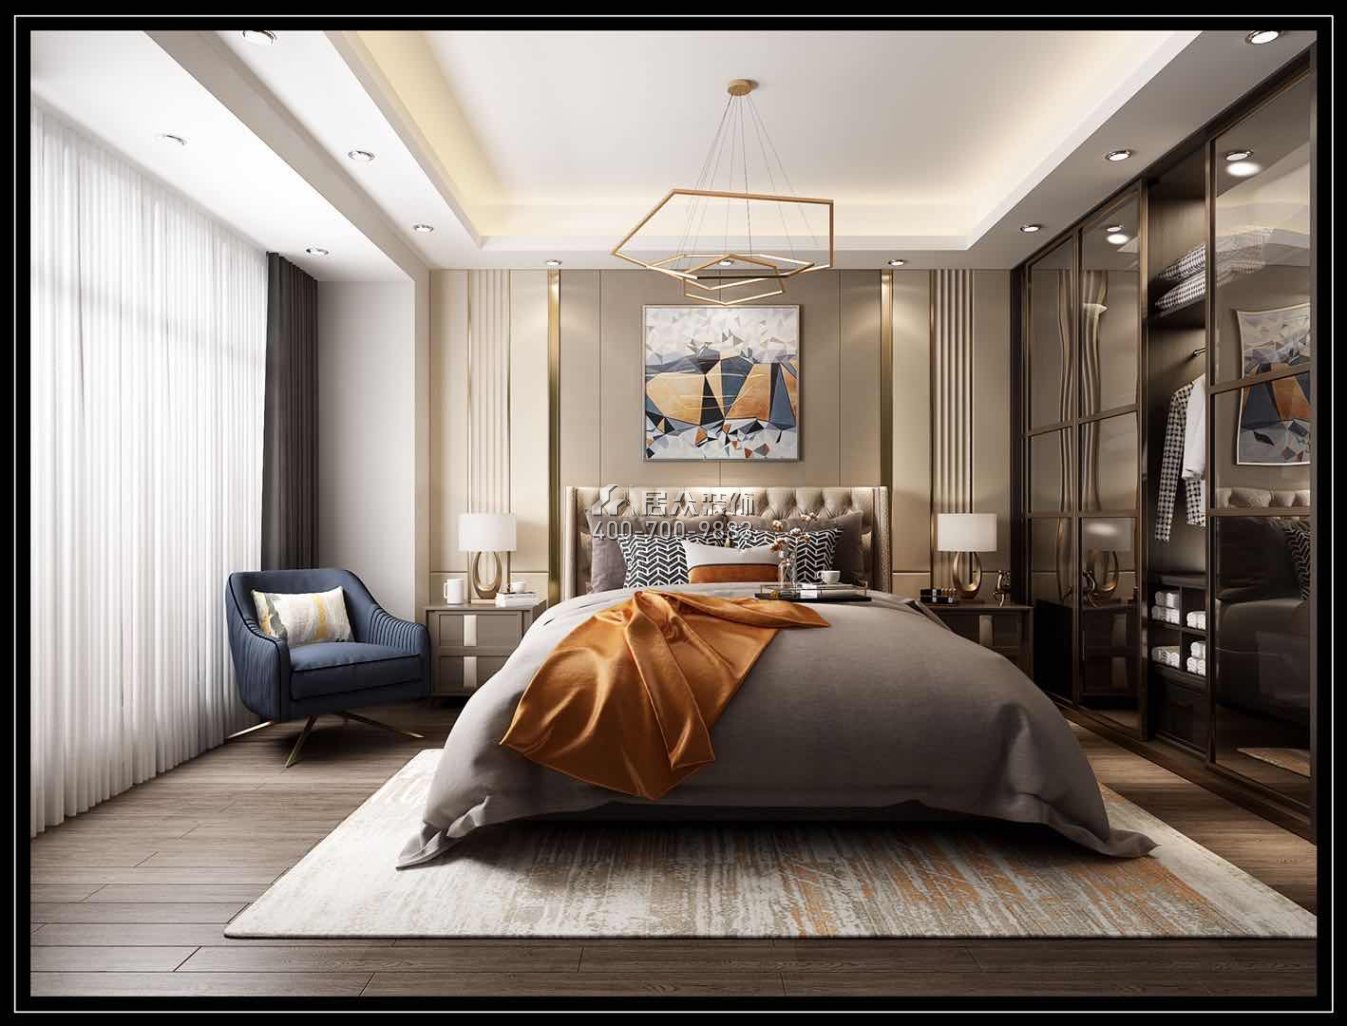 星城翠珑湾150平方米现代简约风格平层户型卧室装修效果图